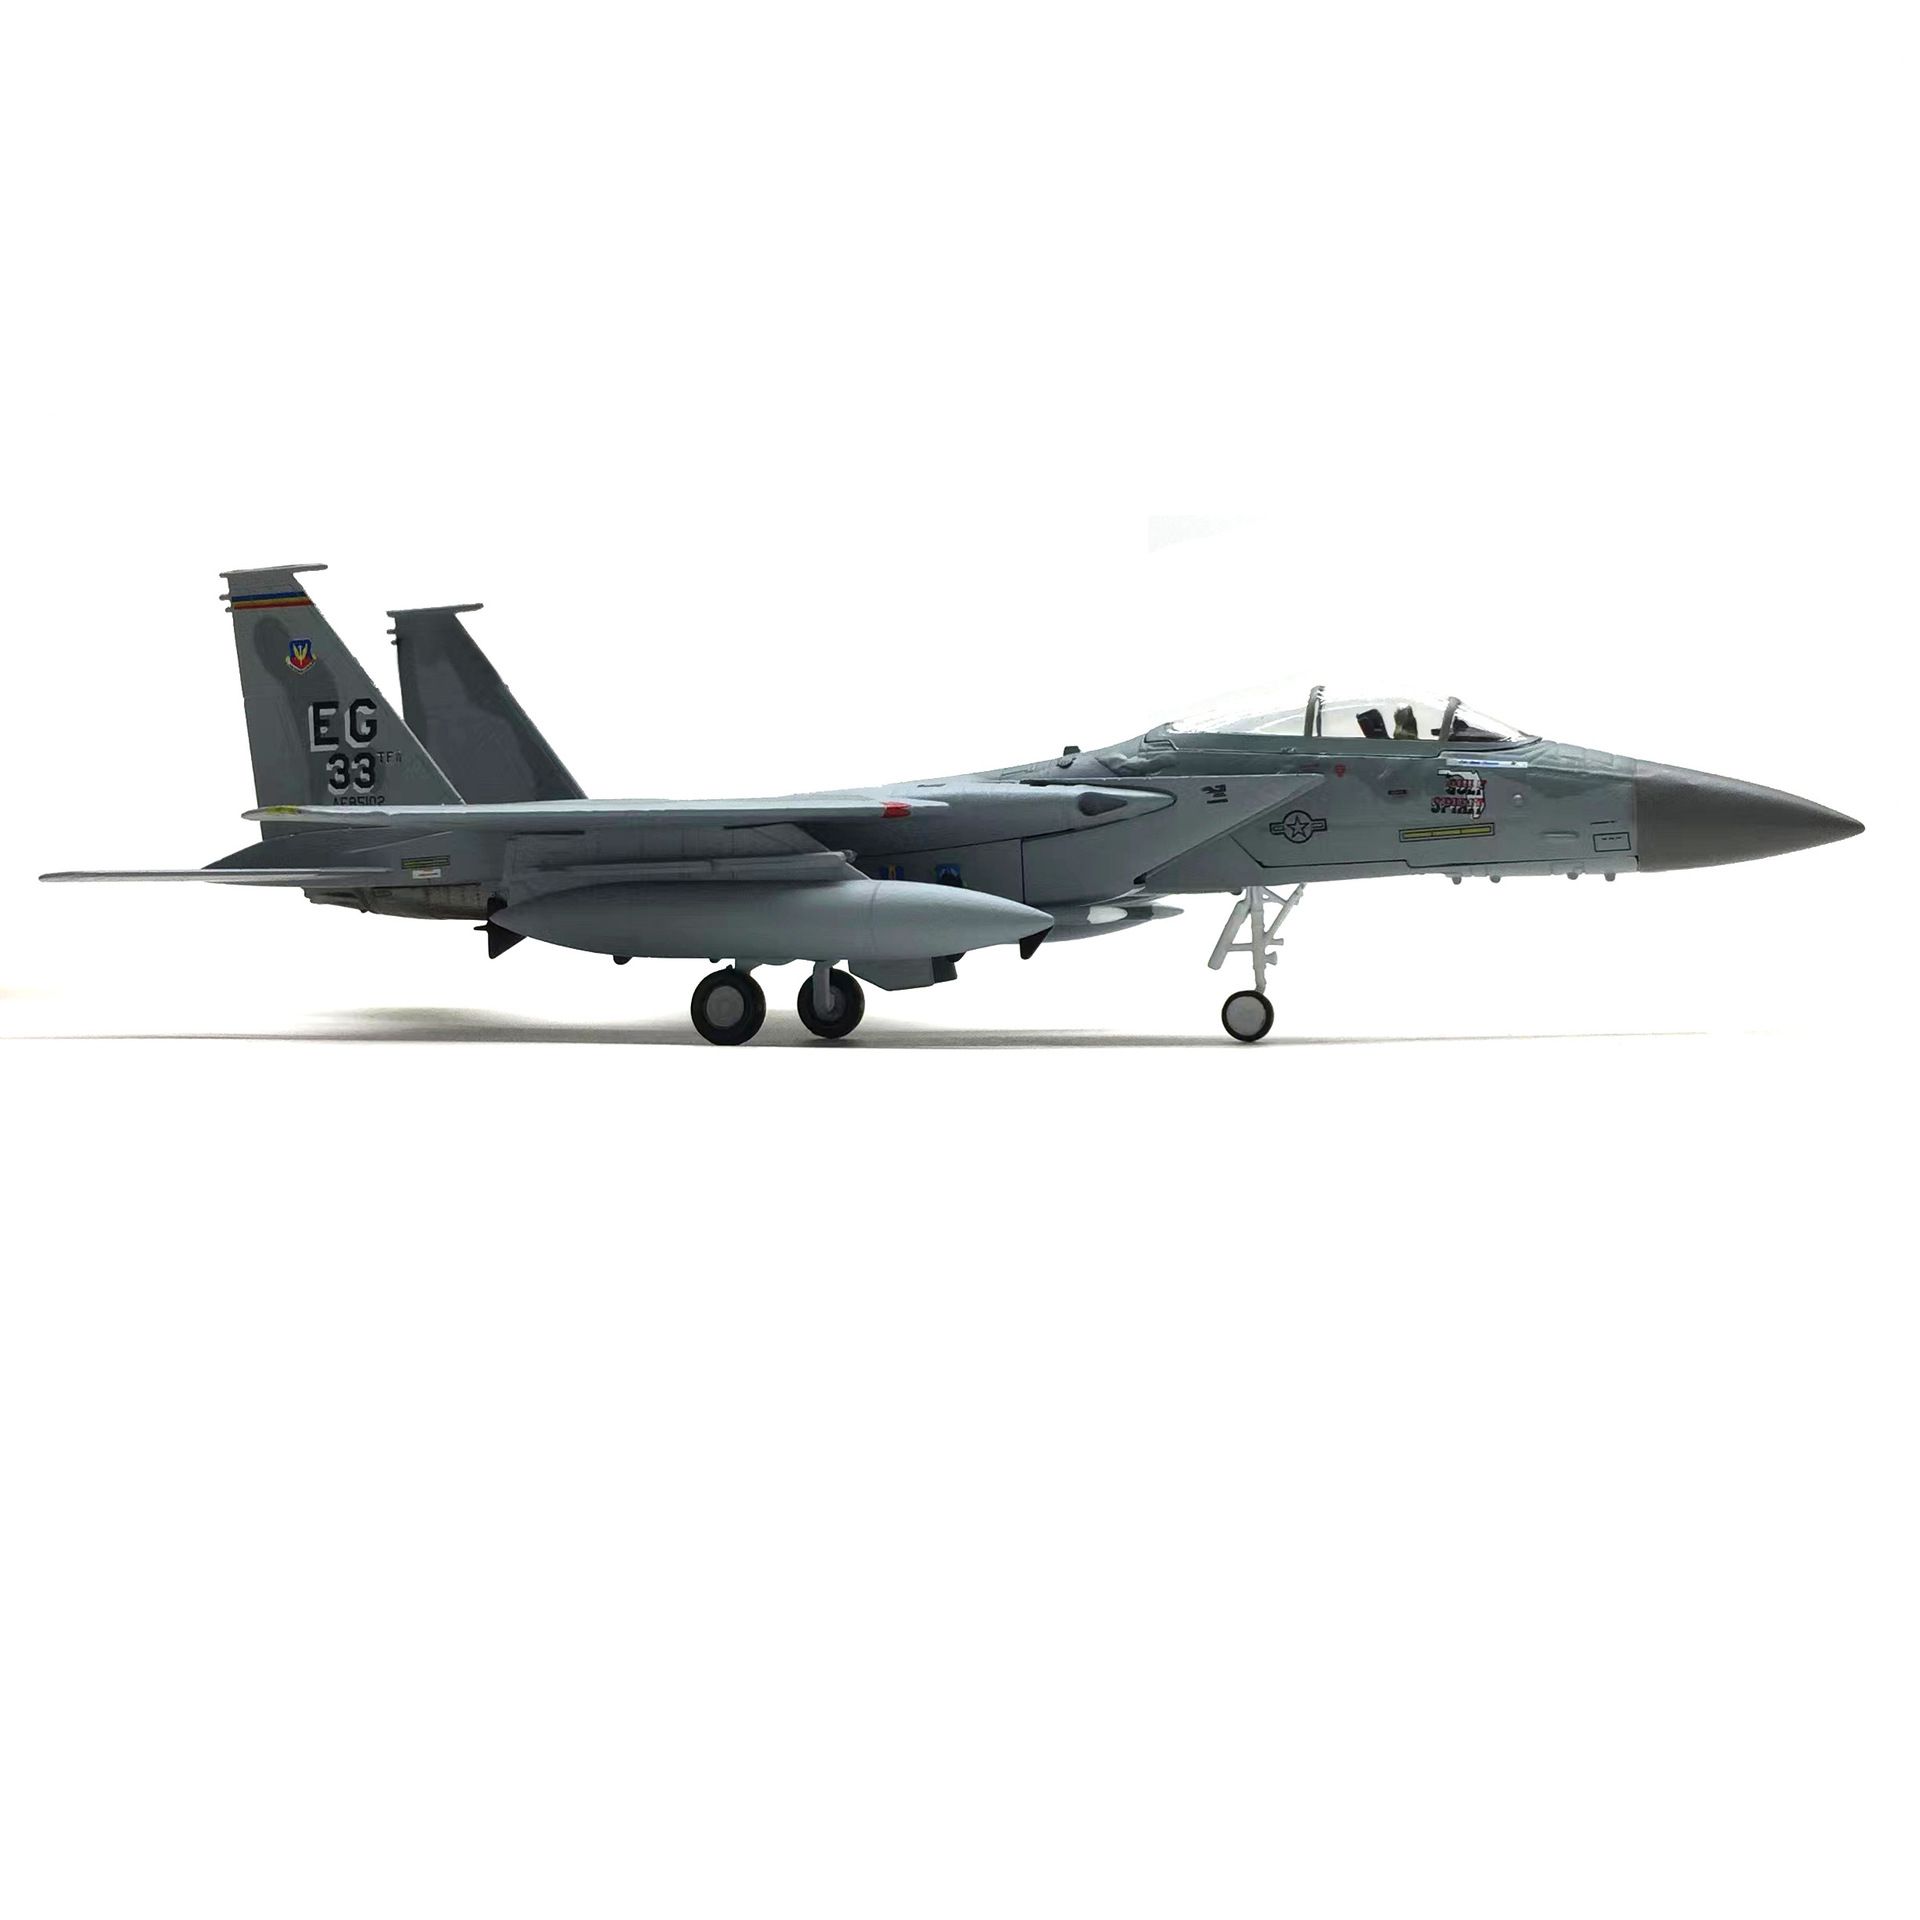  Mô hình máy bay chiến đấu American USA F-15C Eagle 33rd tỉ lệ 1:100 Ns models MBQS048 